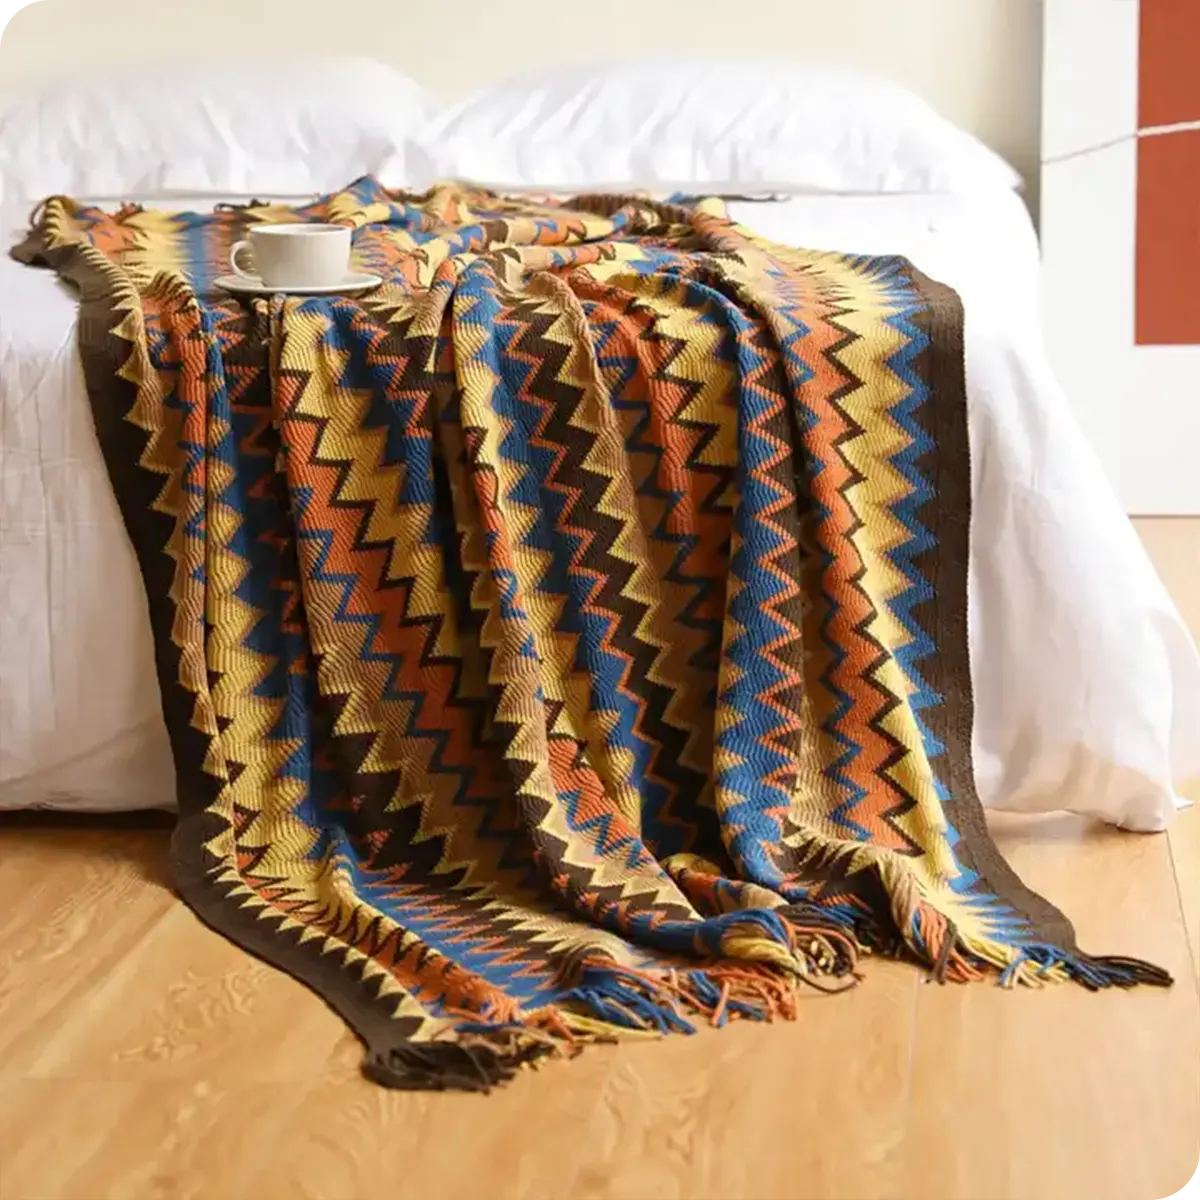 Boho Chic Woven Blanket detail01